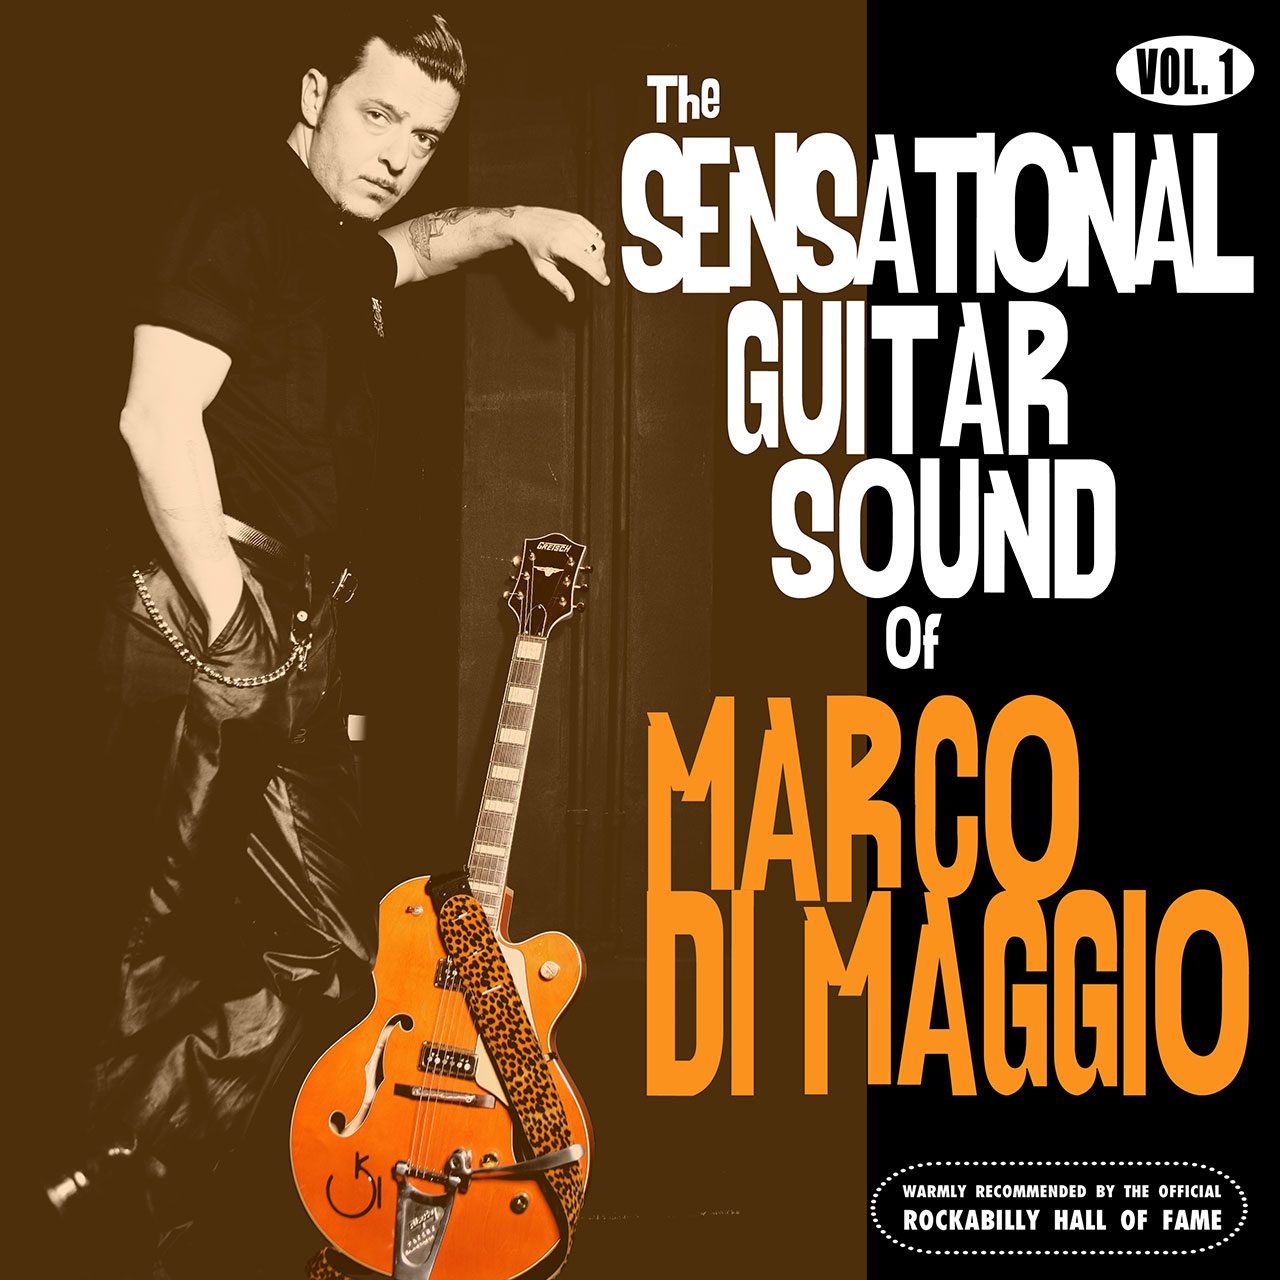 Marco Di Maggio - The-Sensational-Guitar-Sound-of -Vol. 1 cover album